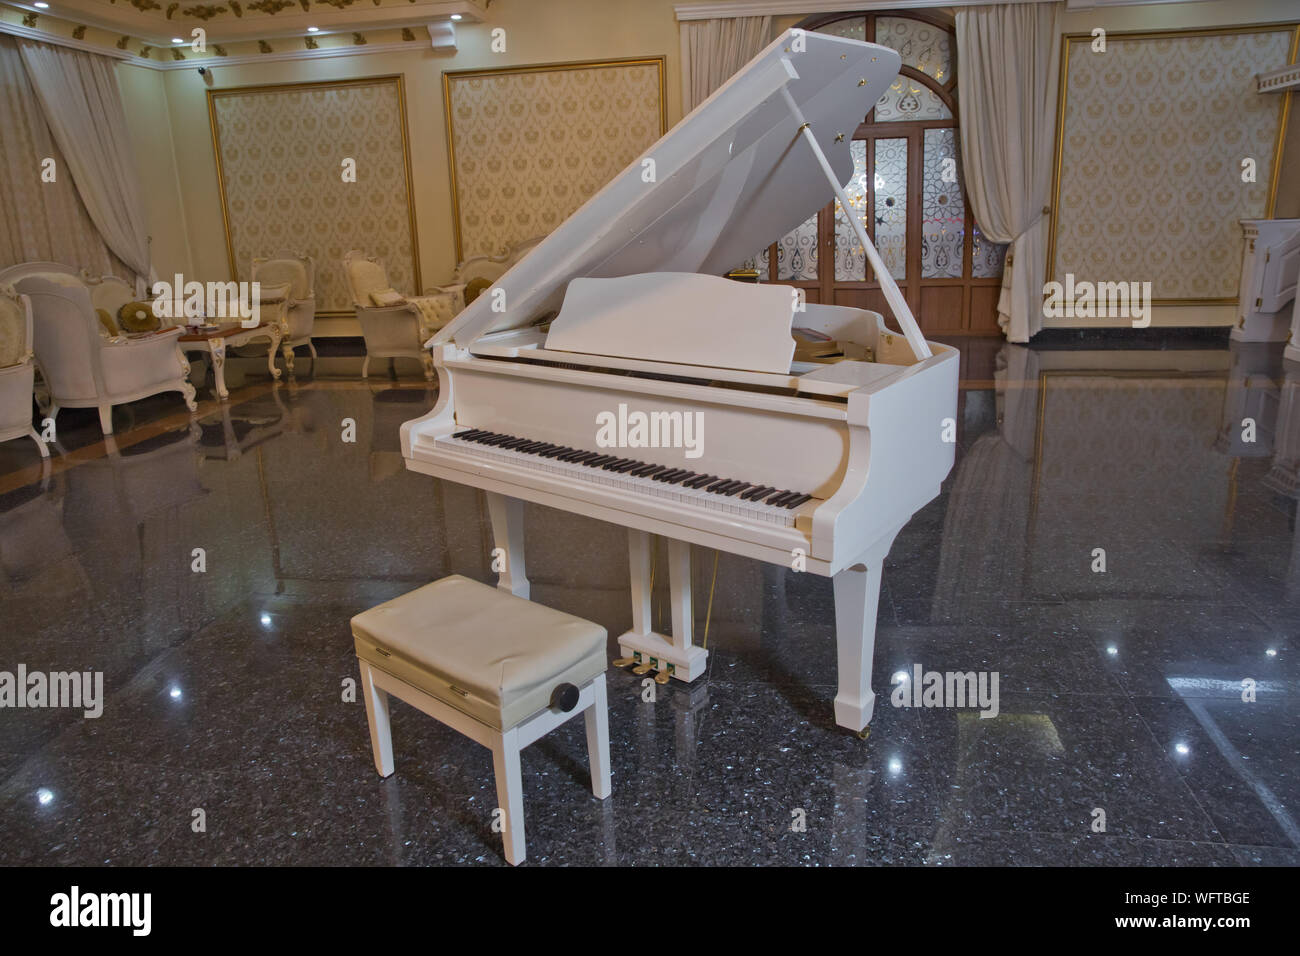 Feder piano Dekor. weißes Klavier und Stuhl. weißes Klavier in der Halle.  Piano Conner für Entspannung und Musik abspielen können Stockfotografie -  Alamy